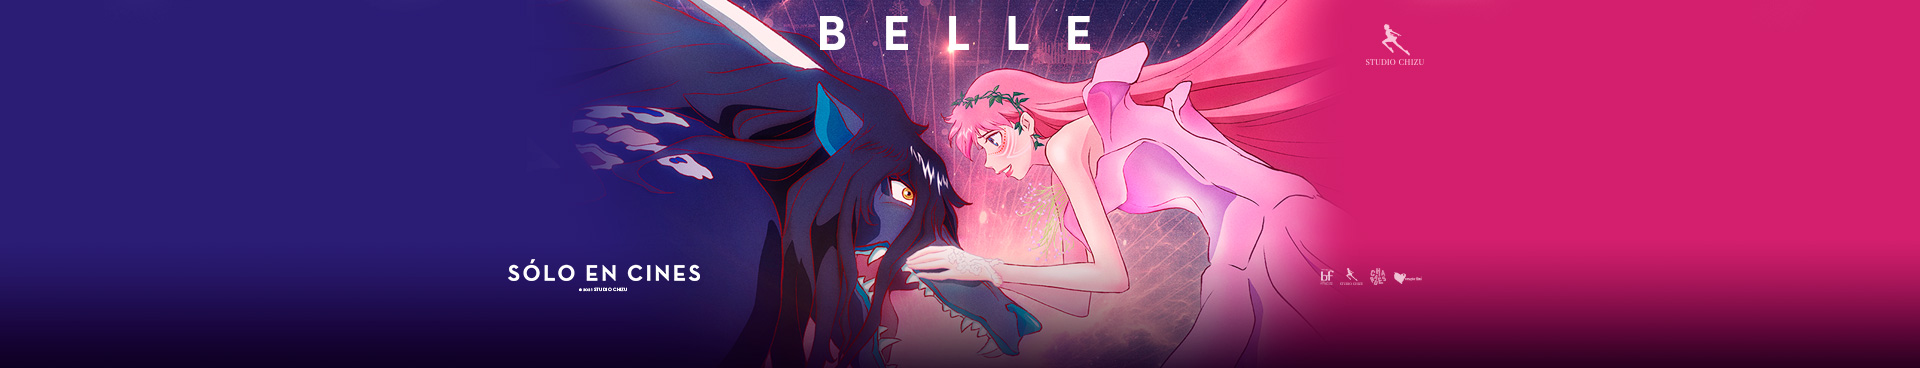 Belle: Princesa de dragón y trigo sarraceno